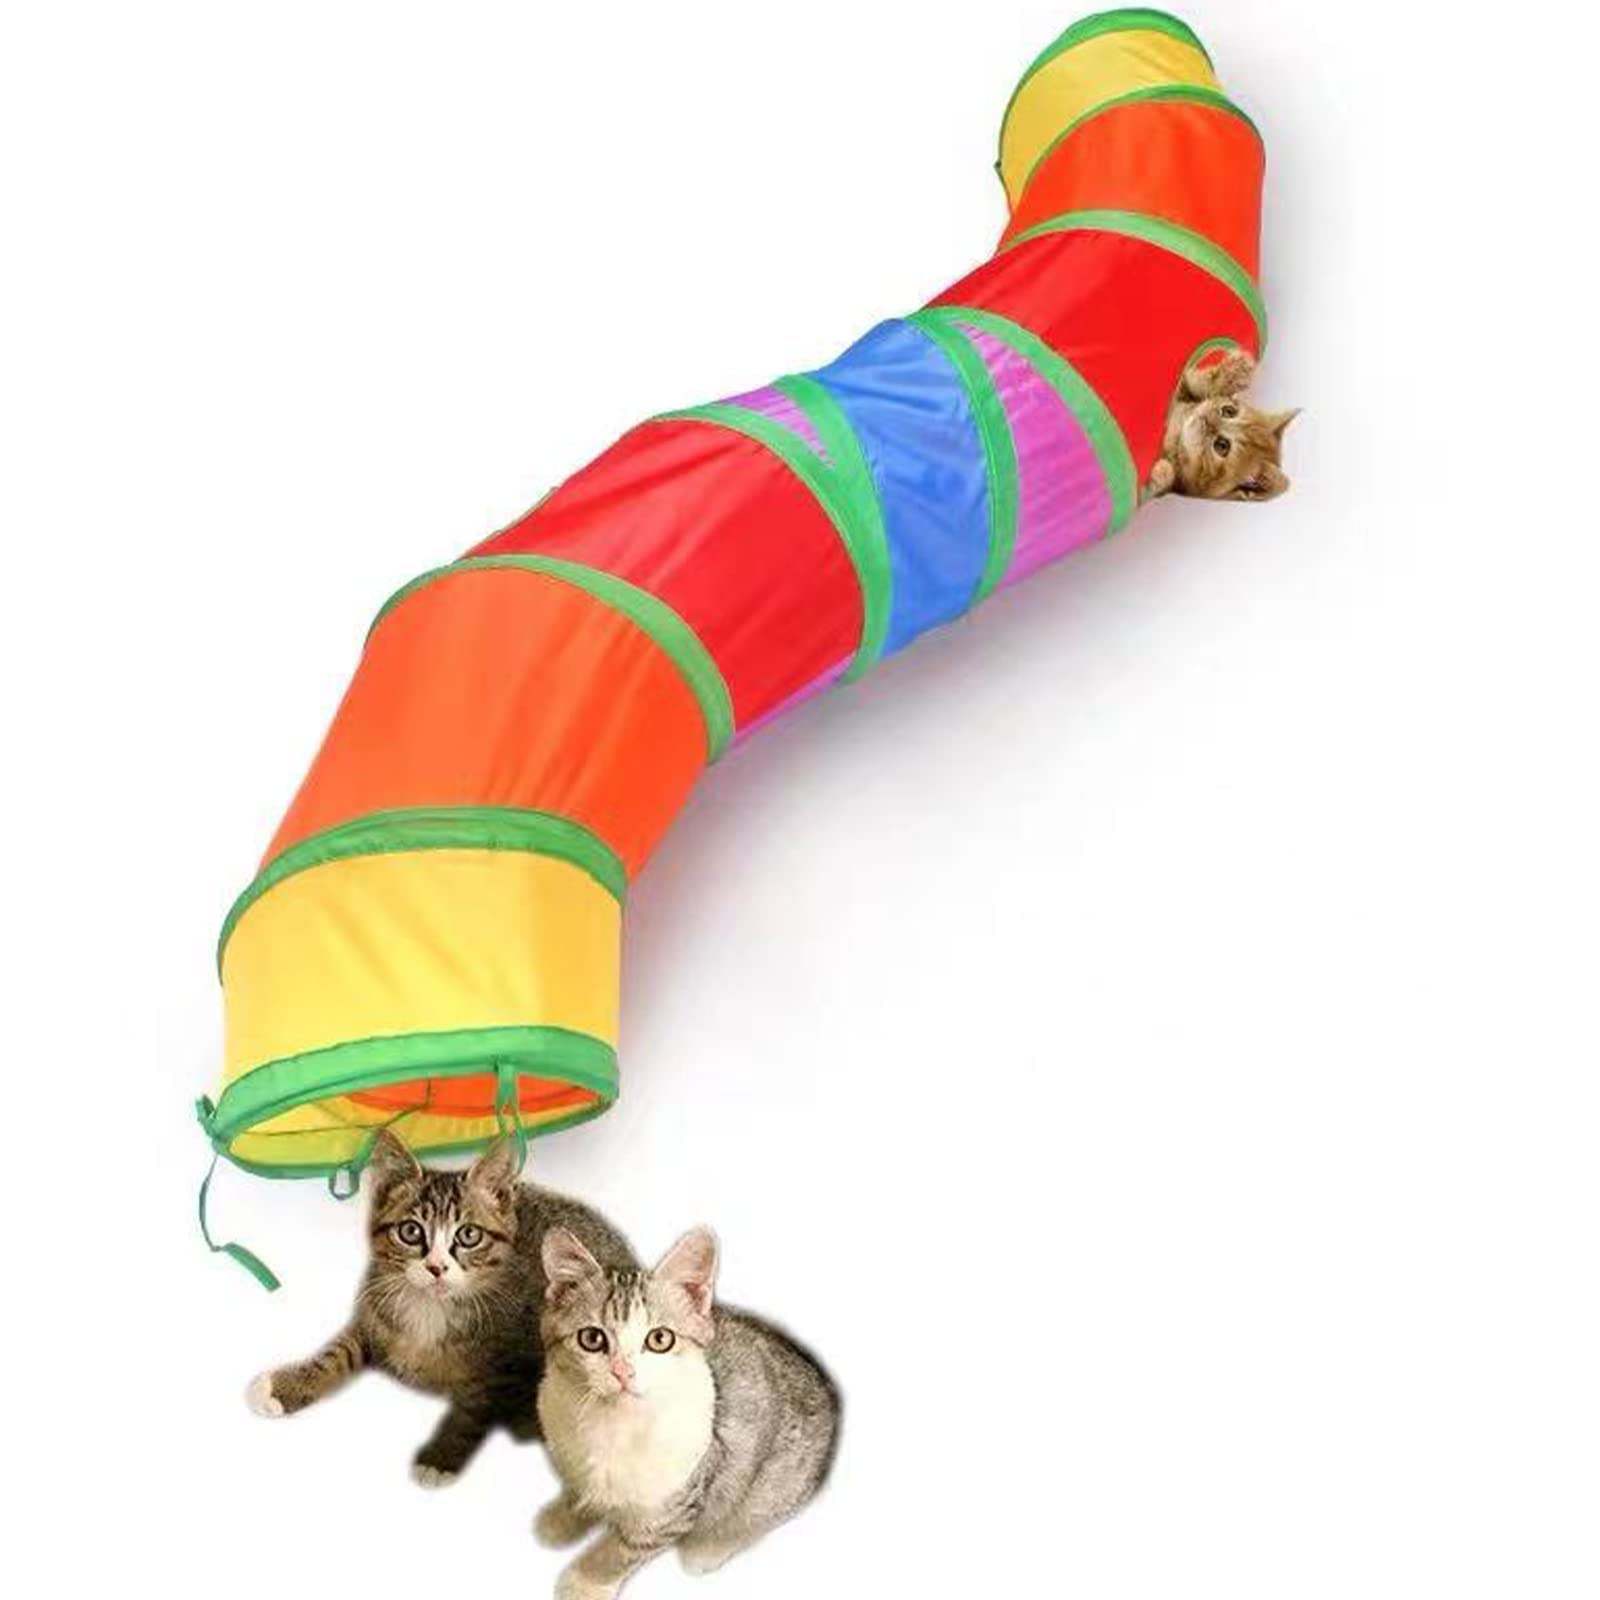 トンネルペット用の おもちゃ トンネル ペット玩具, 猫トンネル ペット用品おもちゃ キャットトンネル 折りたたみ式3つのトンネル 子犬 うさぎ フェレットなど噛むおもちゃ ボールに付き (マルチカラー)